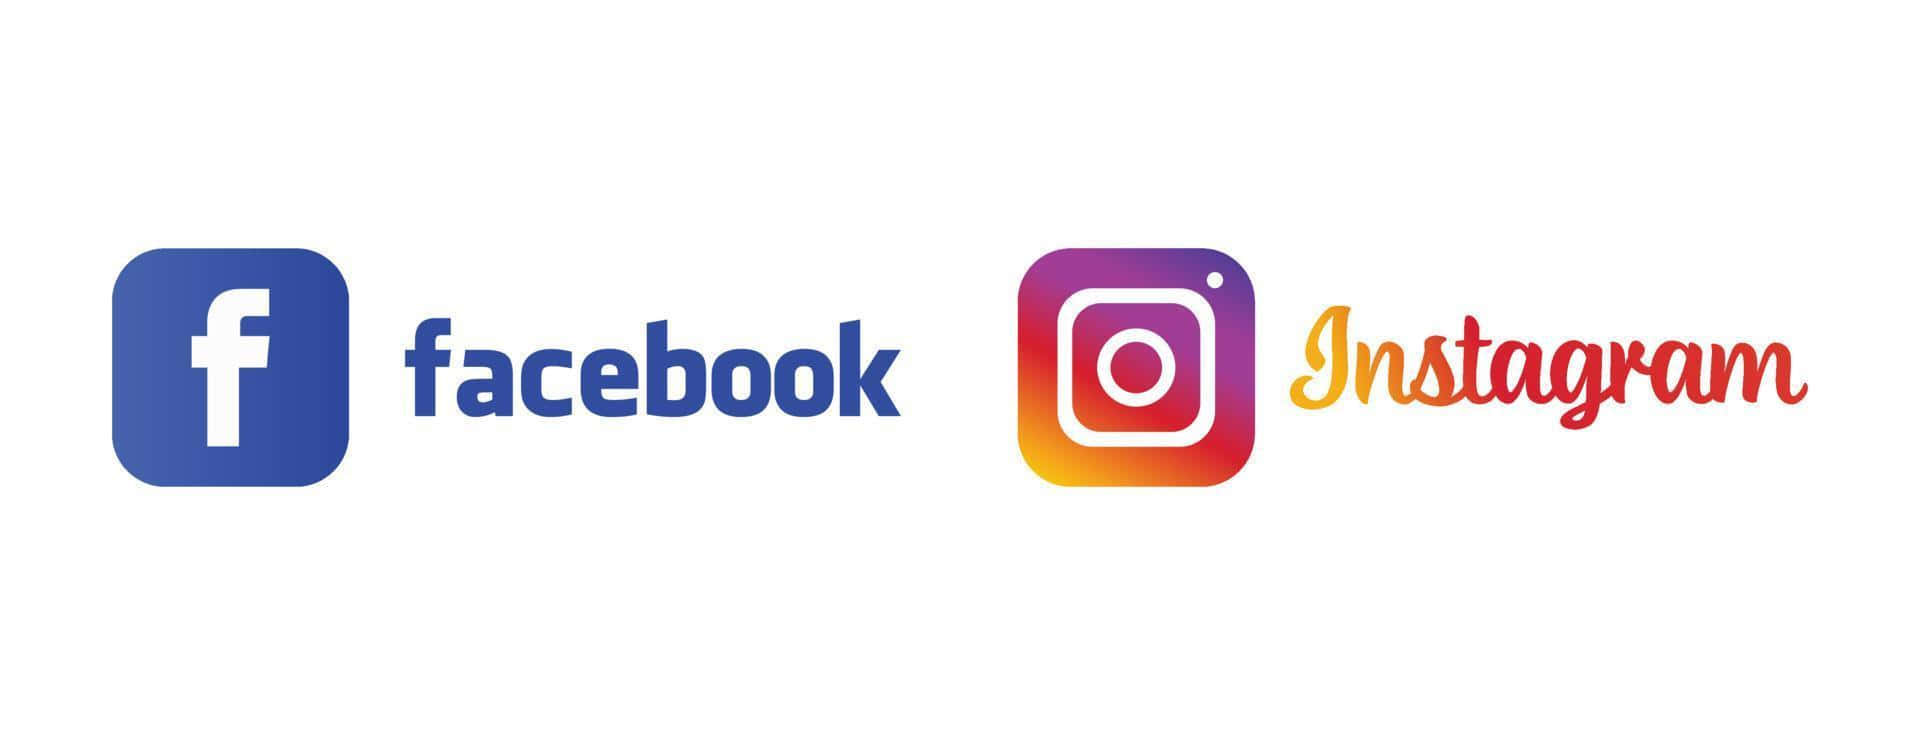 Facebook&Instagram Logo Picture